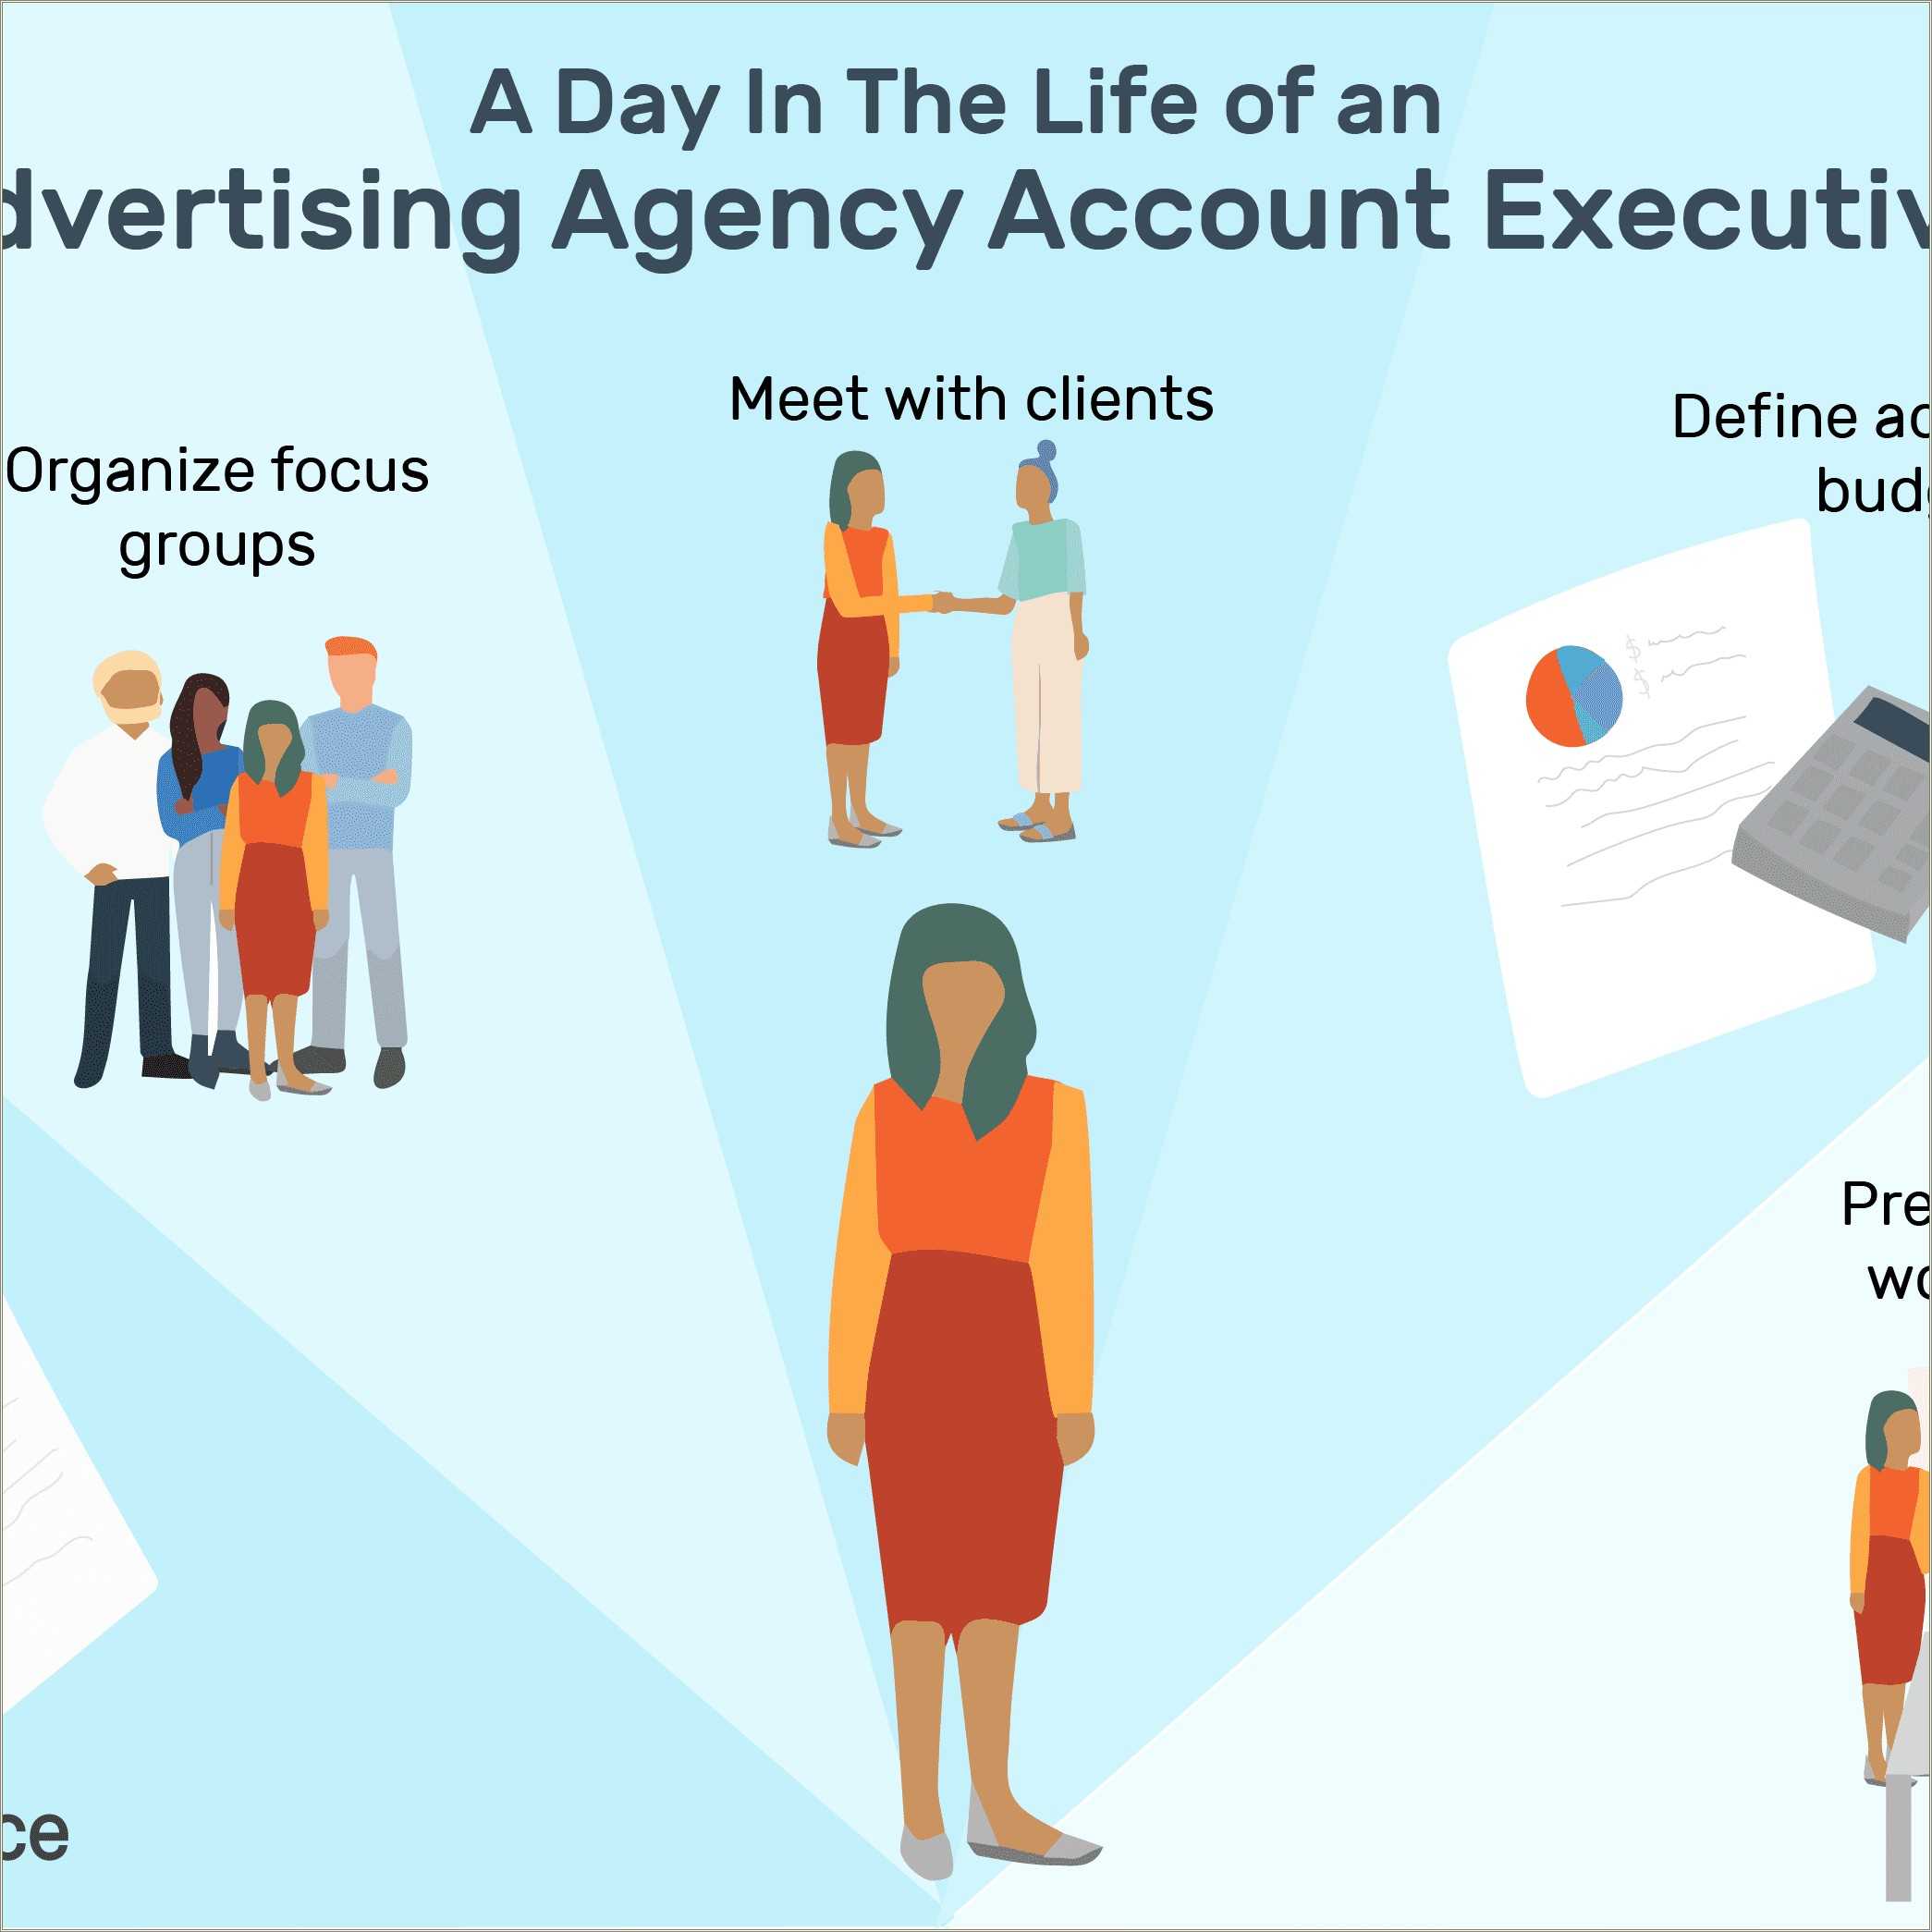 Advertising Account Executive Job Description Resume